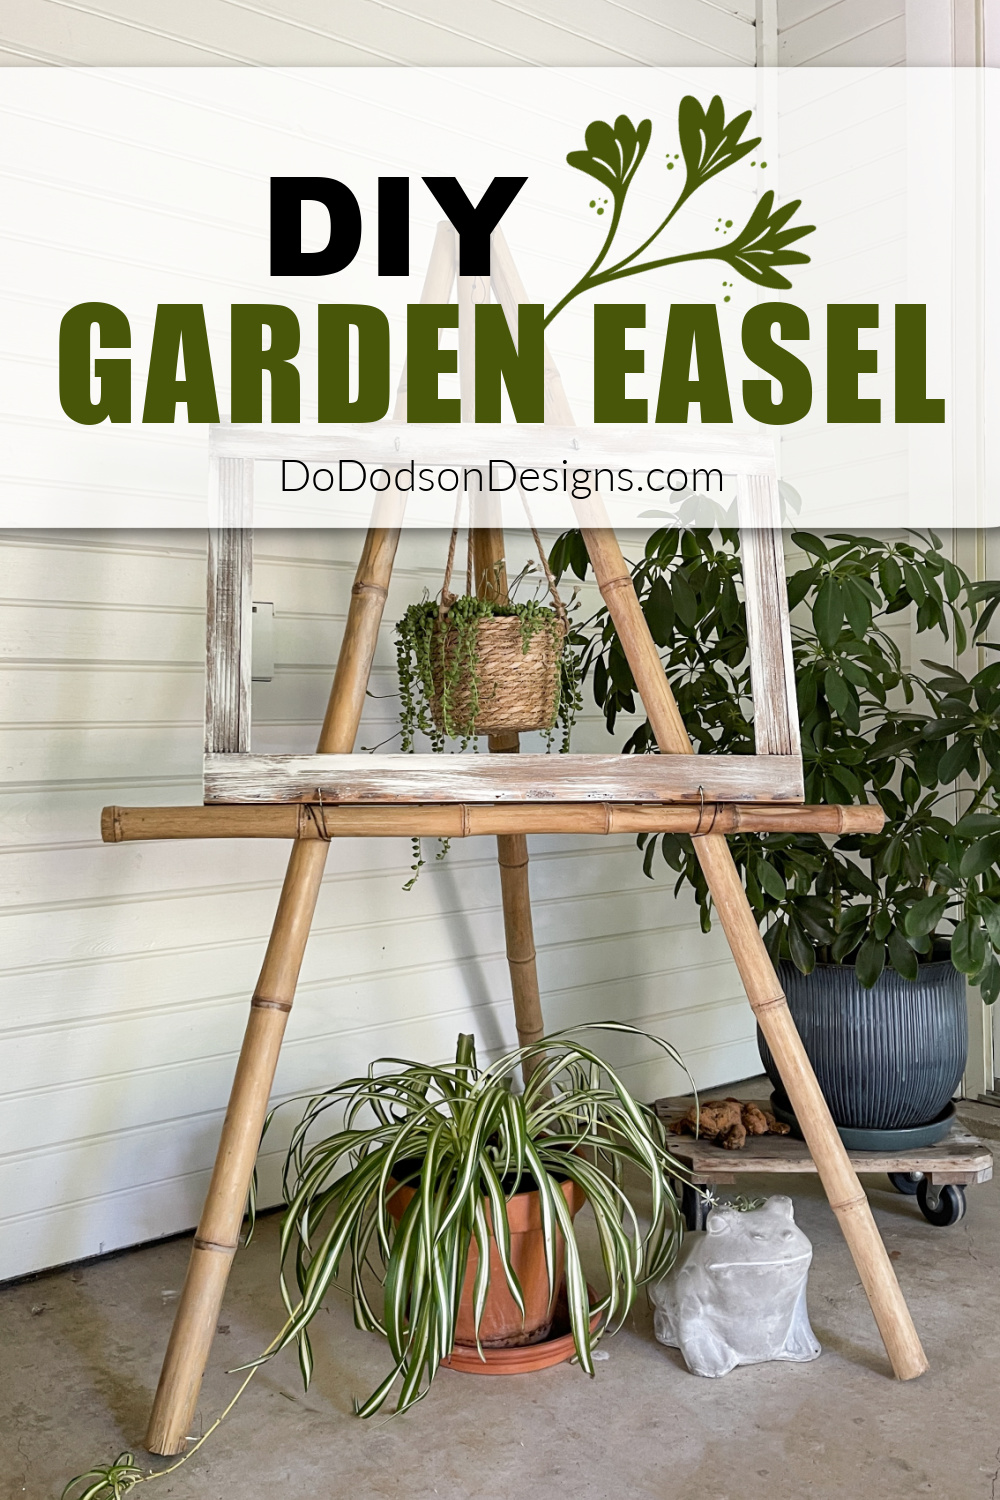 DIY Garden Easel (Elevate Your Backyard Decor) - Do Dodson Designs